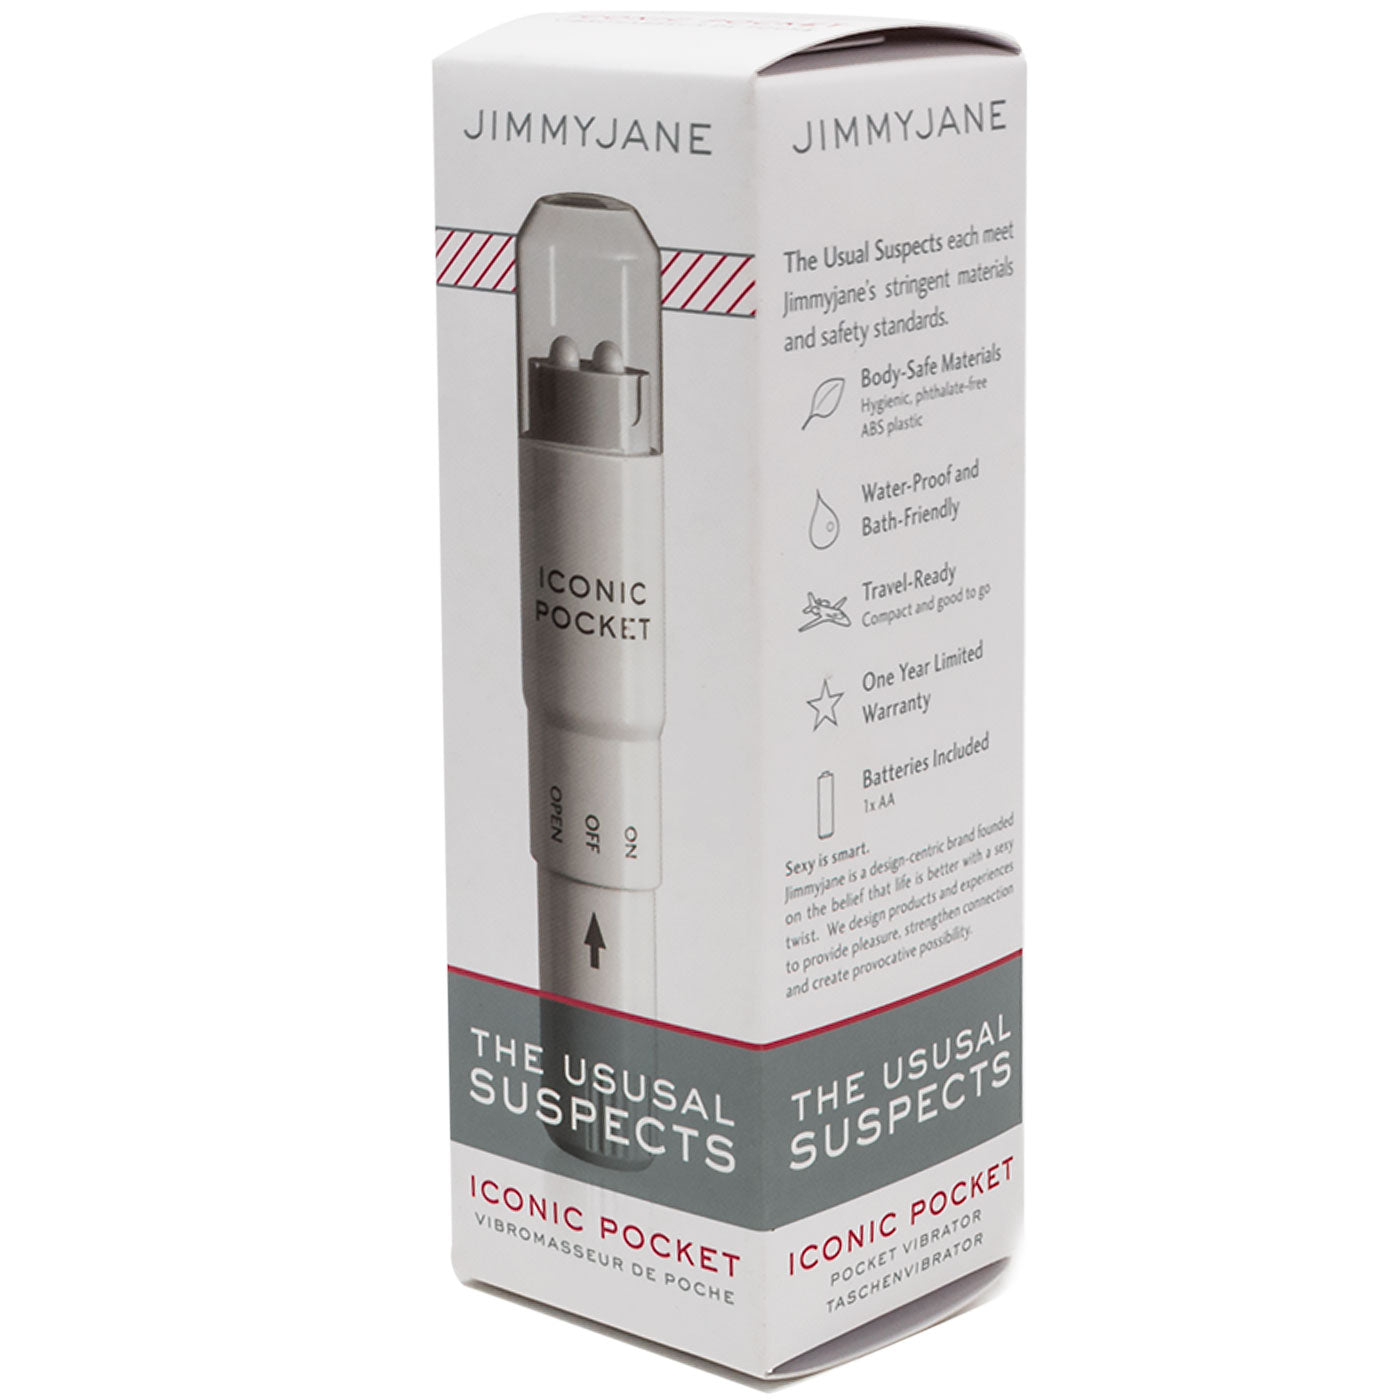 Jimmyjane Iconic Pocket Vibrator